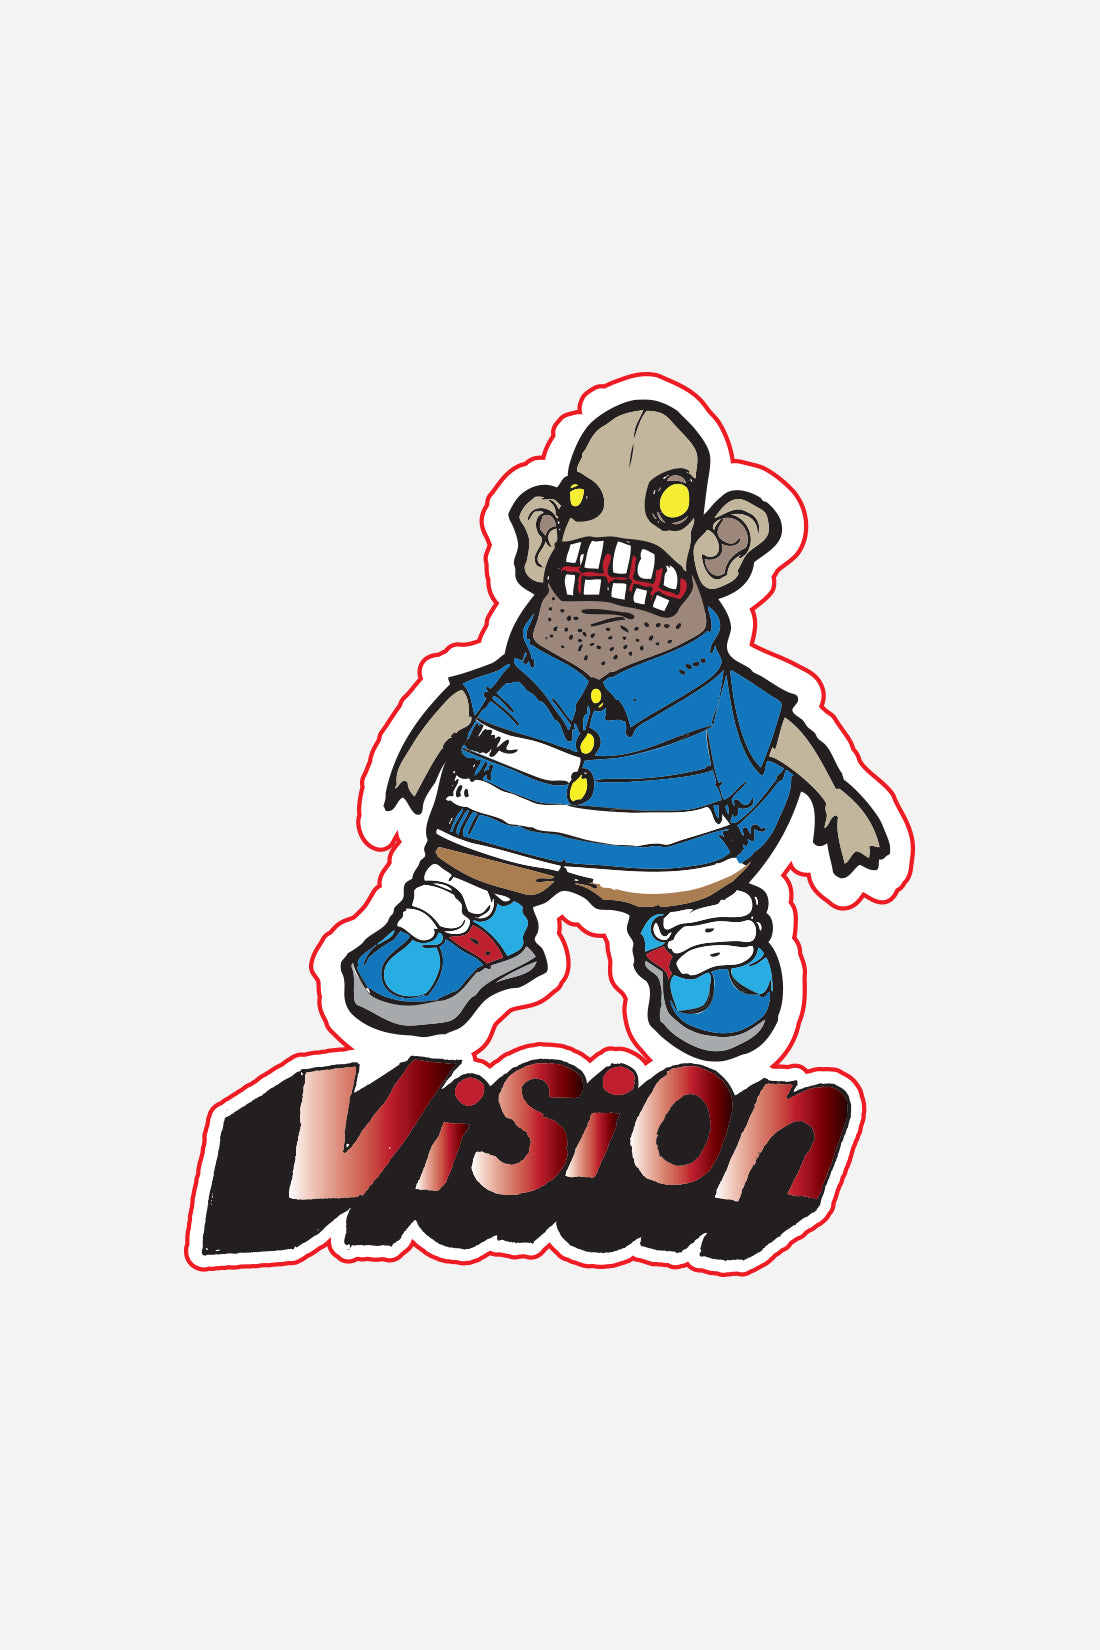 Vision Street Wear Skateboard Stickers